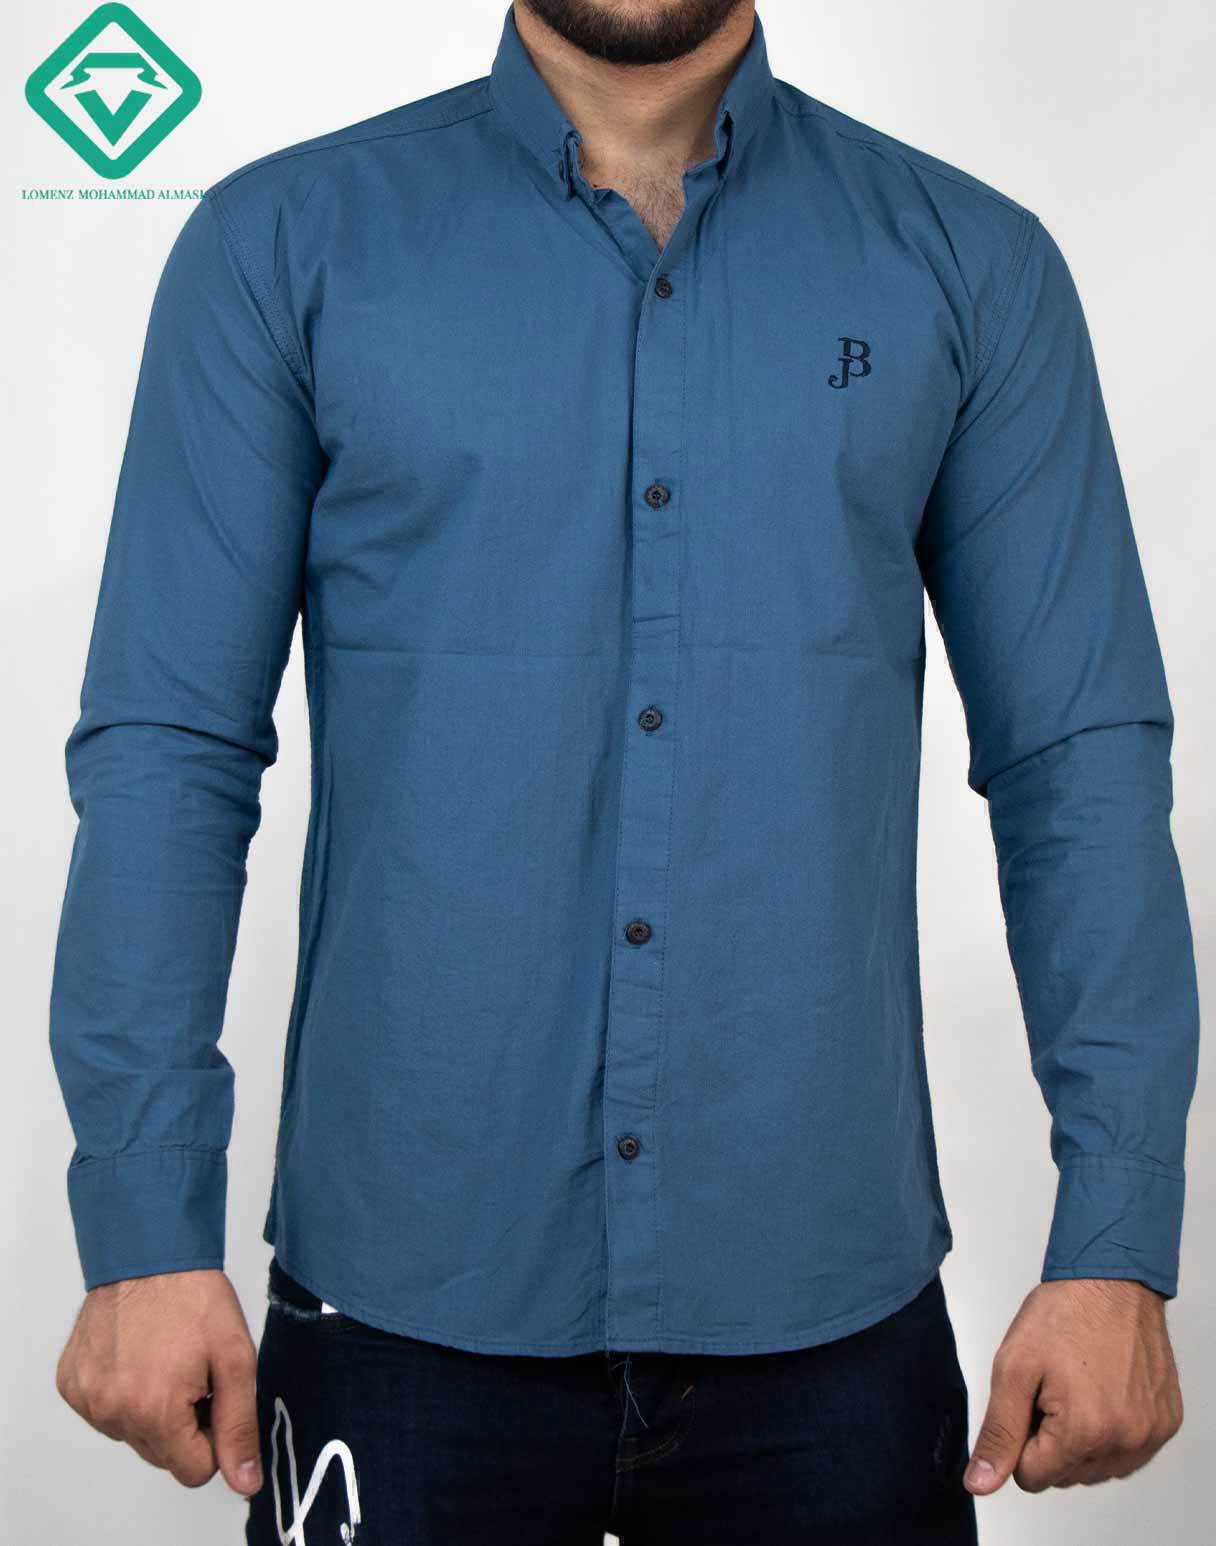  پیراهن آستین بلند اسپرت کد 001 تولید و ارائه شده توسط سایت لومنز 